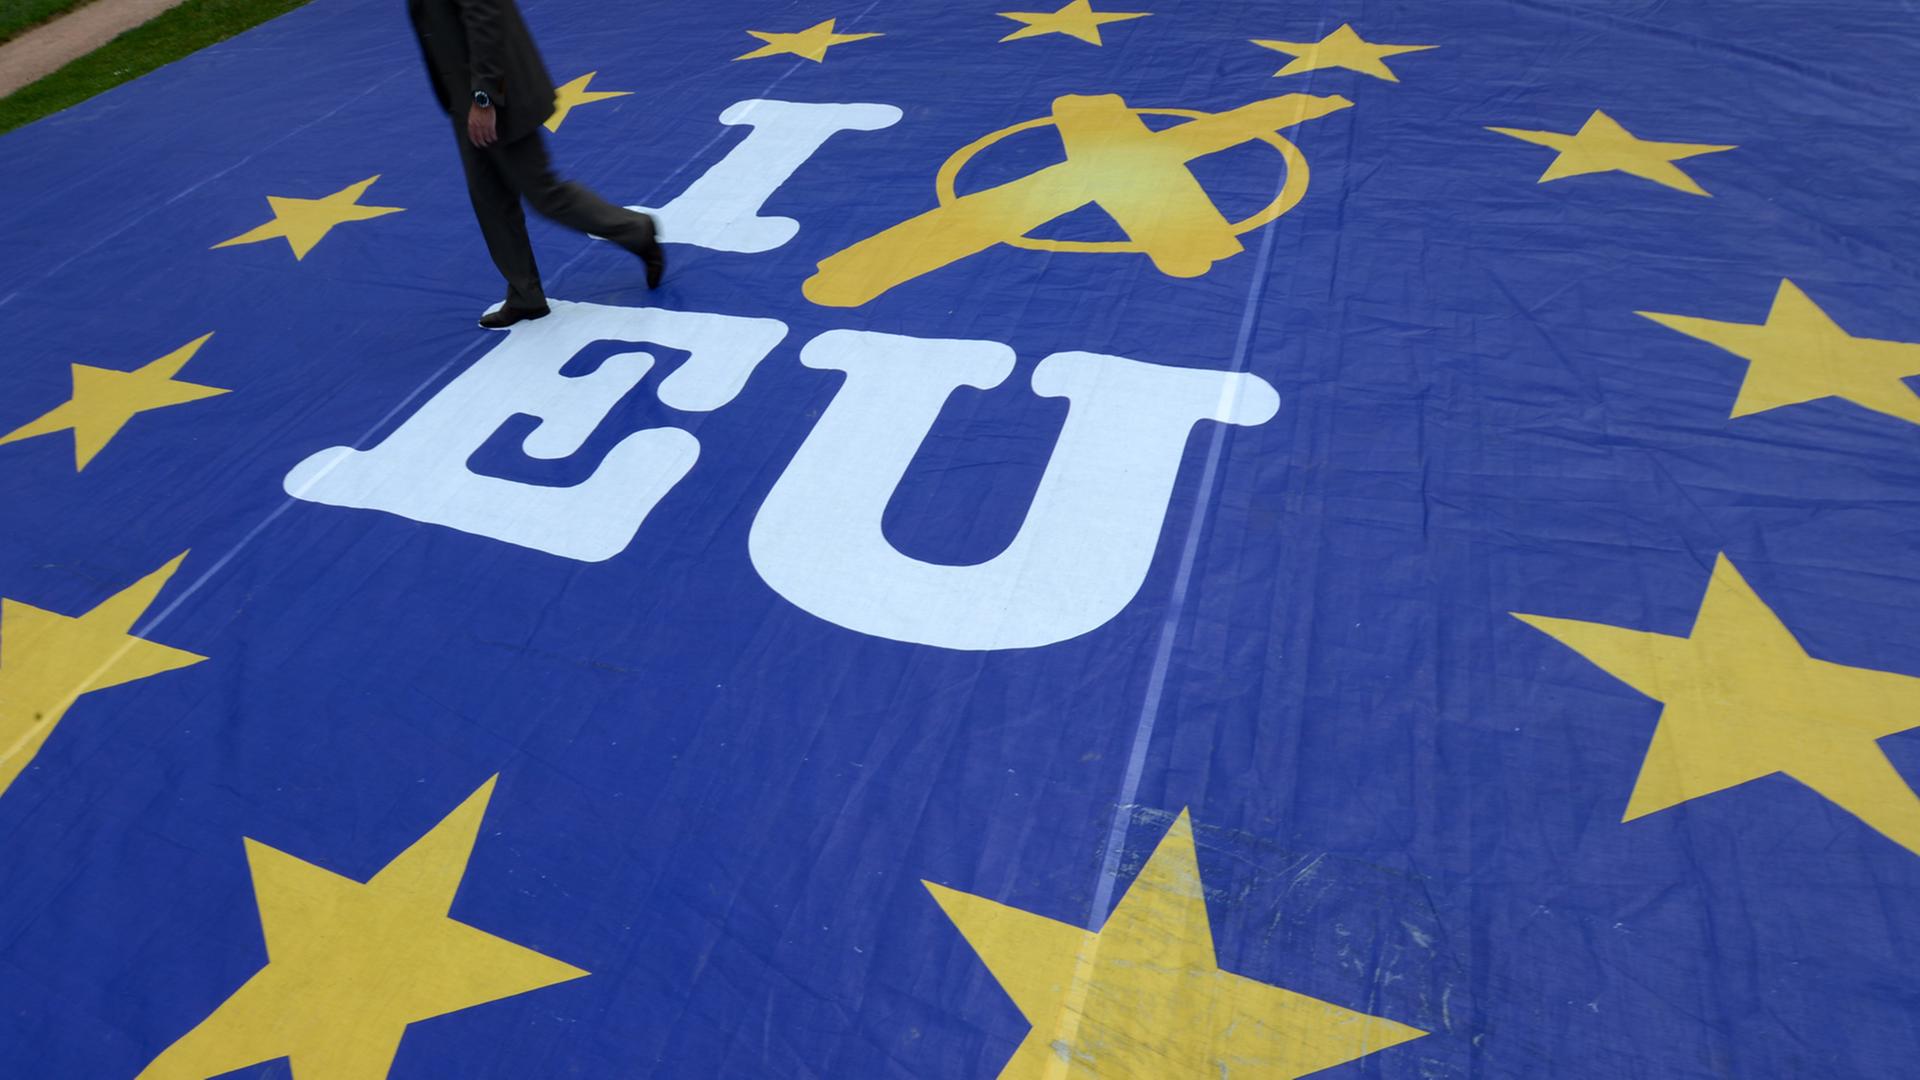 Ein riesiges Banner zeigt auf dem Boden liegend die EU-Flagge mit zwölf gelben Sternen auf blauem Grund, in der Mitte "I vote EU".